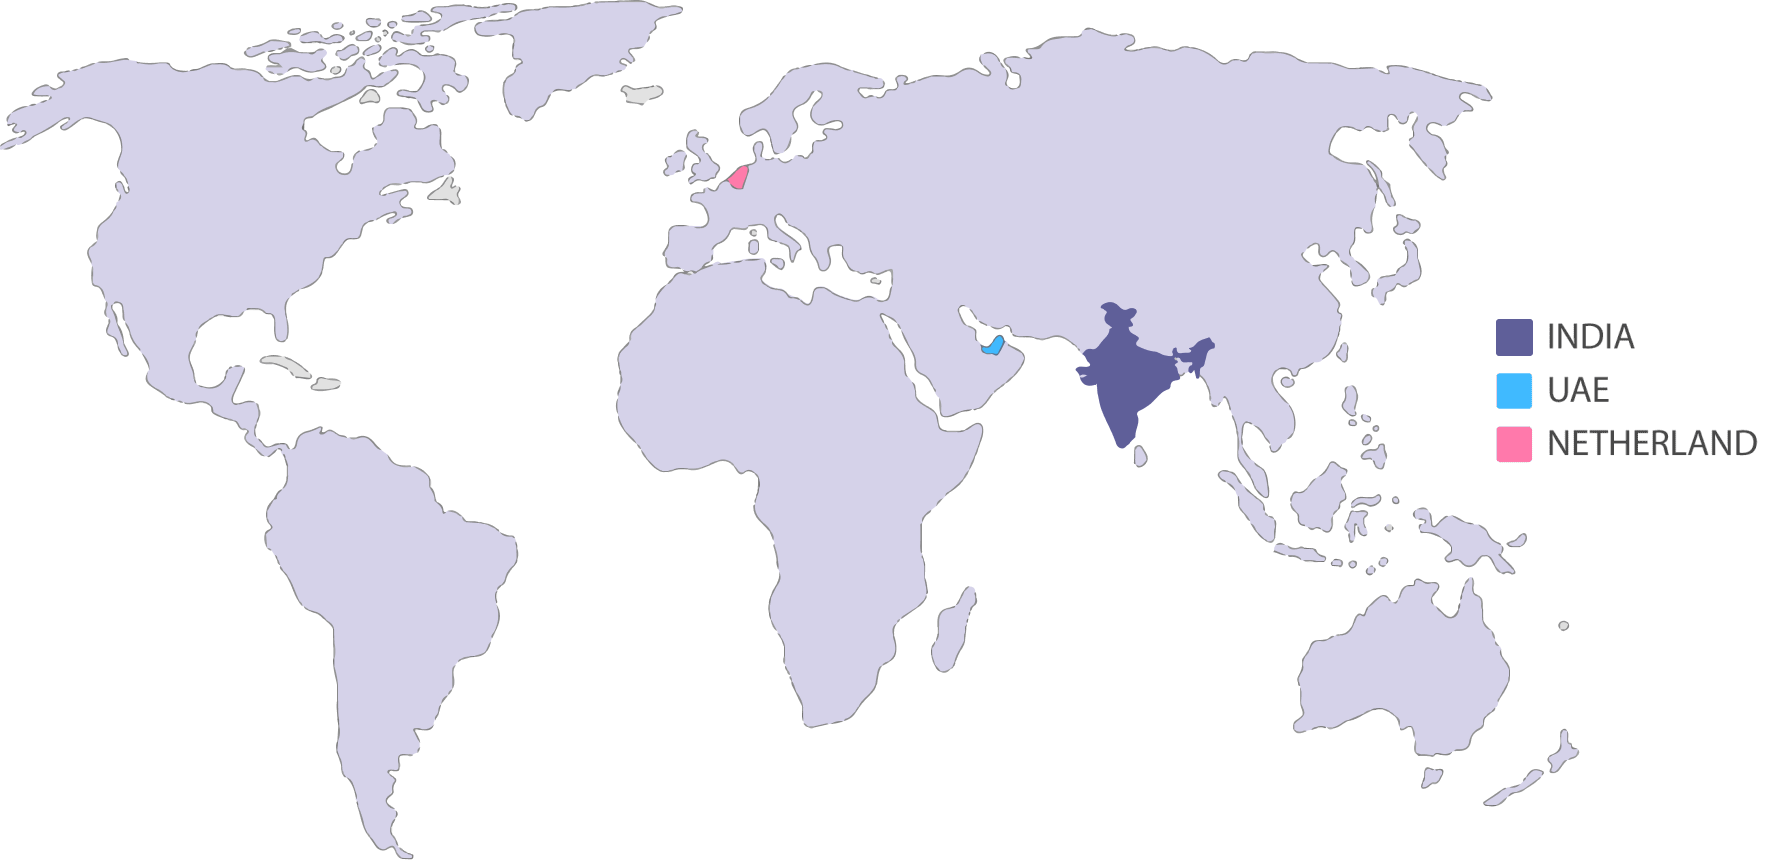 World map image, symbolizing Optima Life Science's global presence worldwide